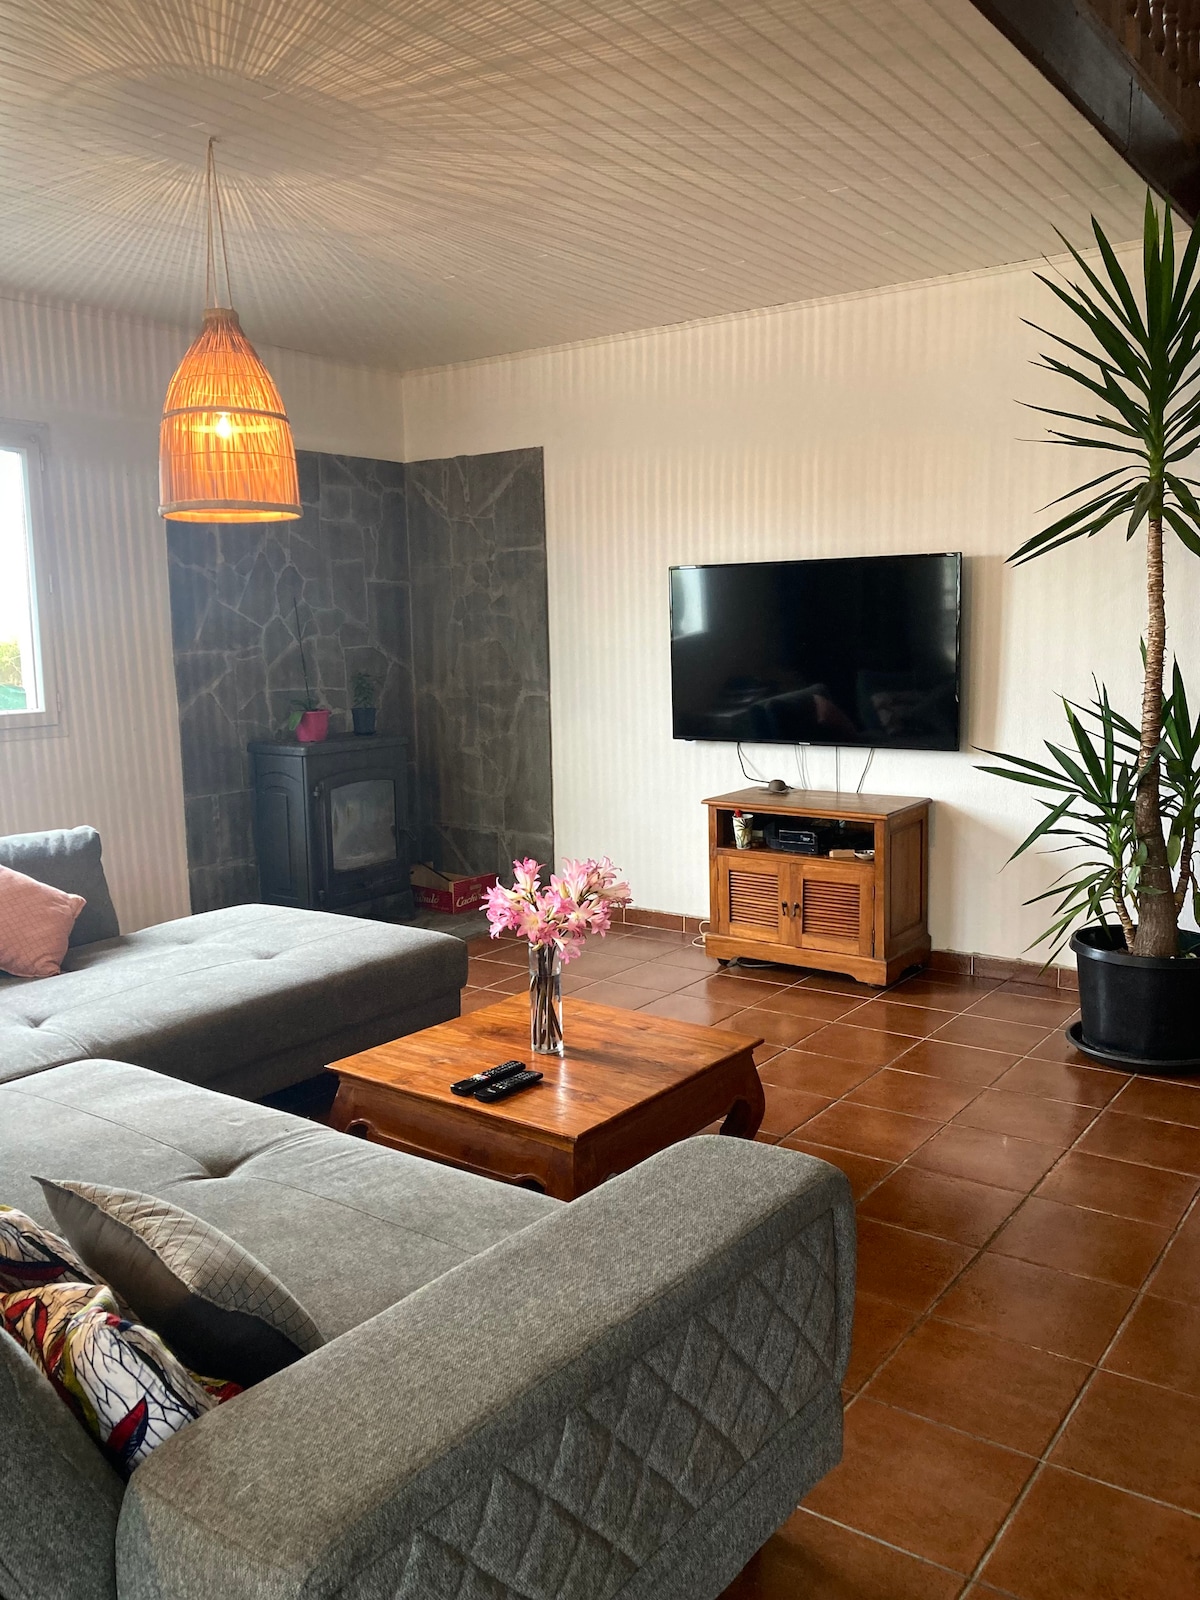 Le Tampon : locations de vacances et logements - Saint-Pierre, Réunion |  Airbnb